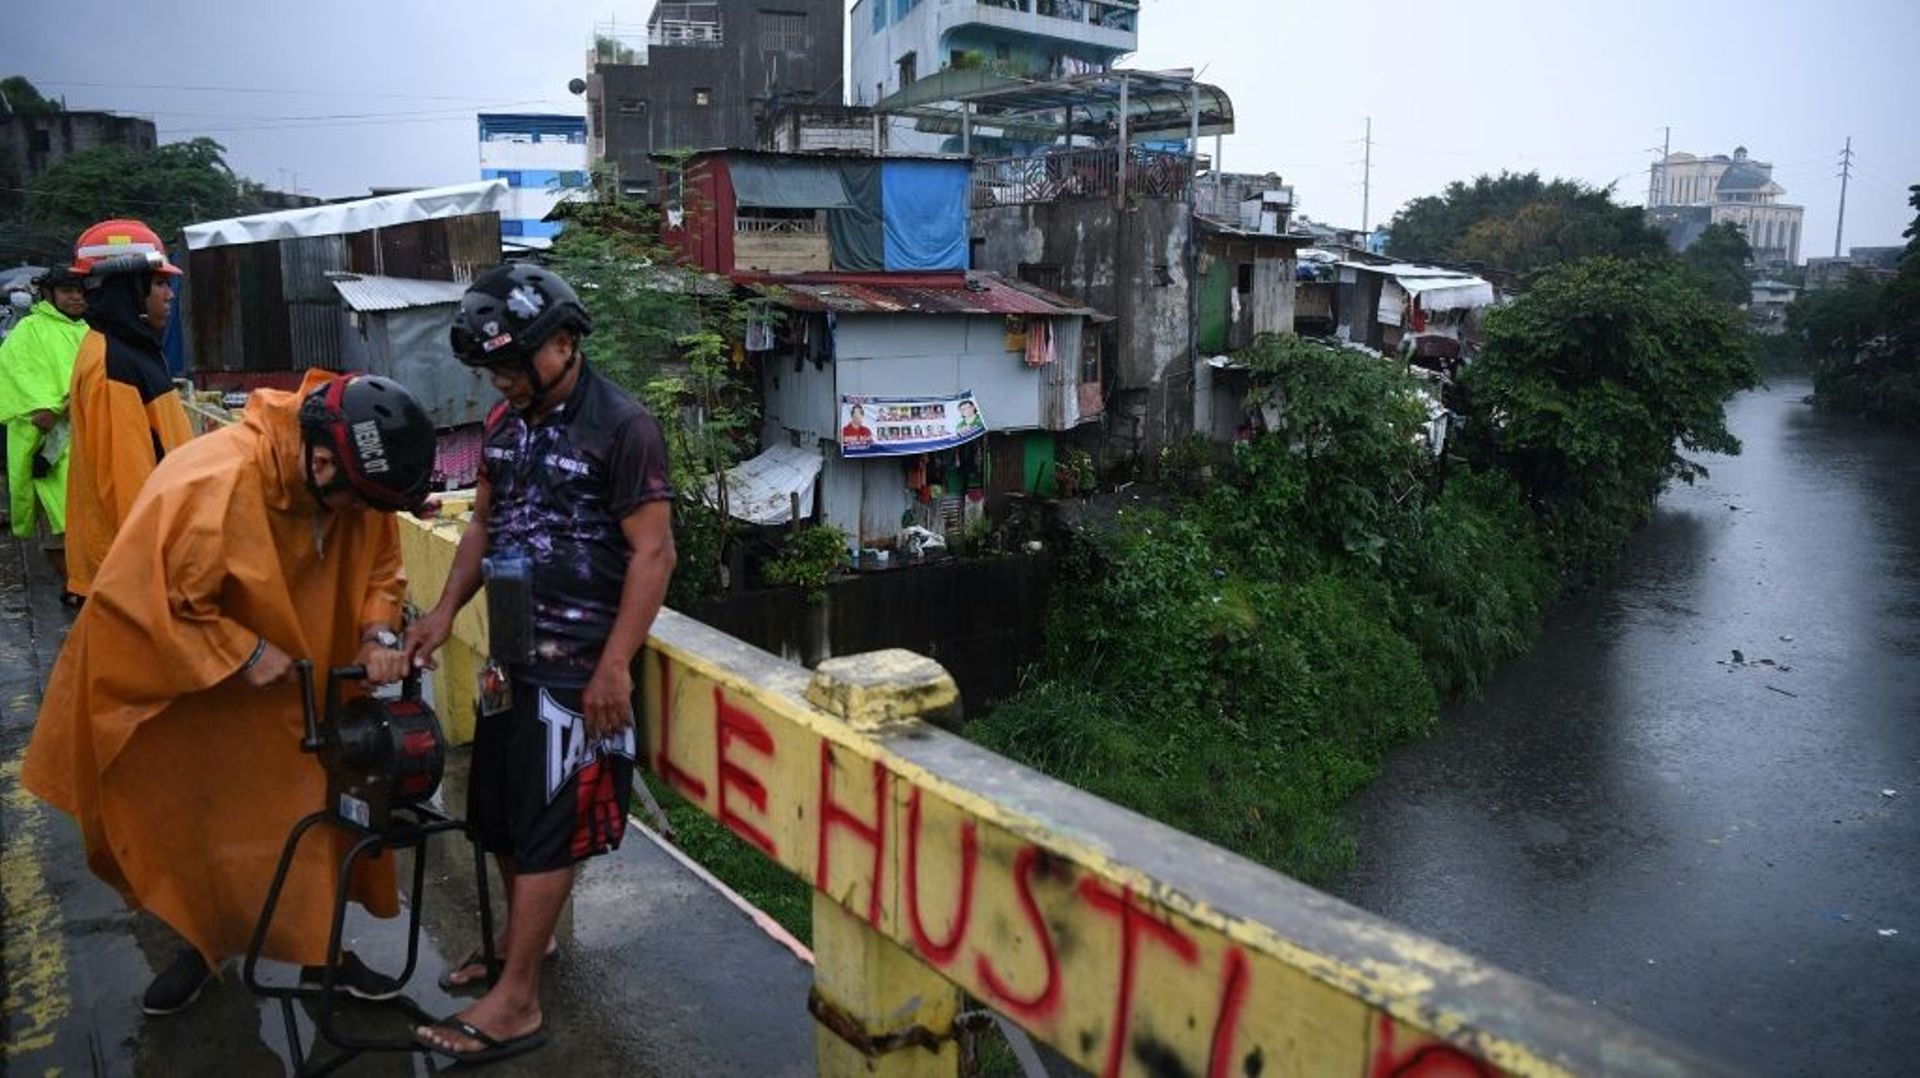 Des responsables mettent en route une sirène à Quezon, dans la banlieue de Manille, le 25 septembre 2022